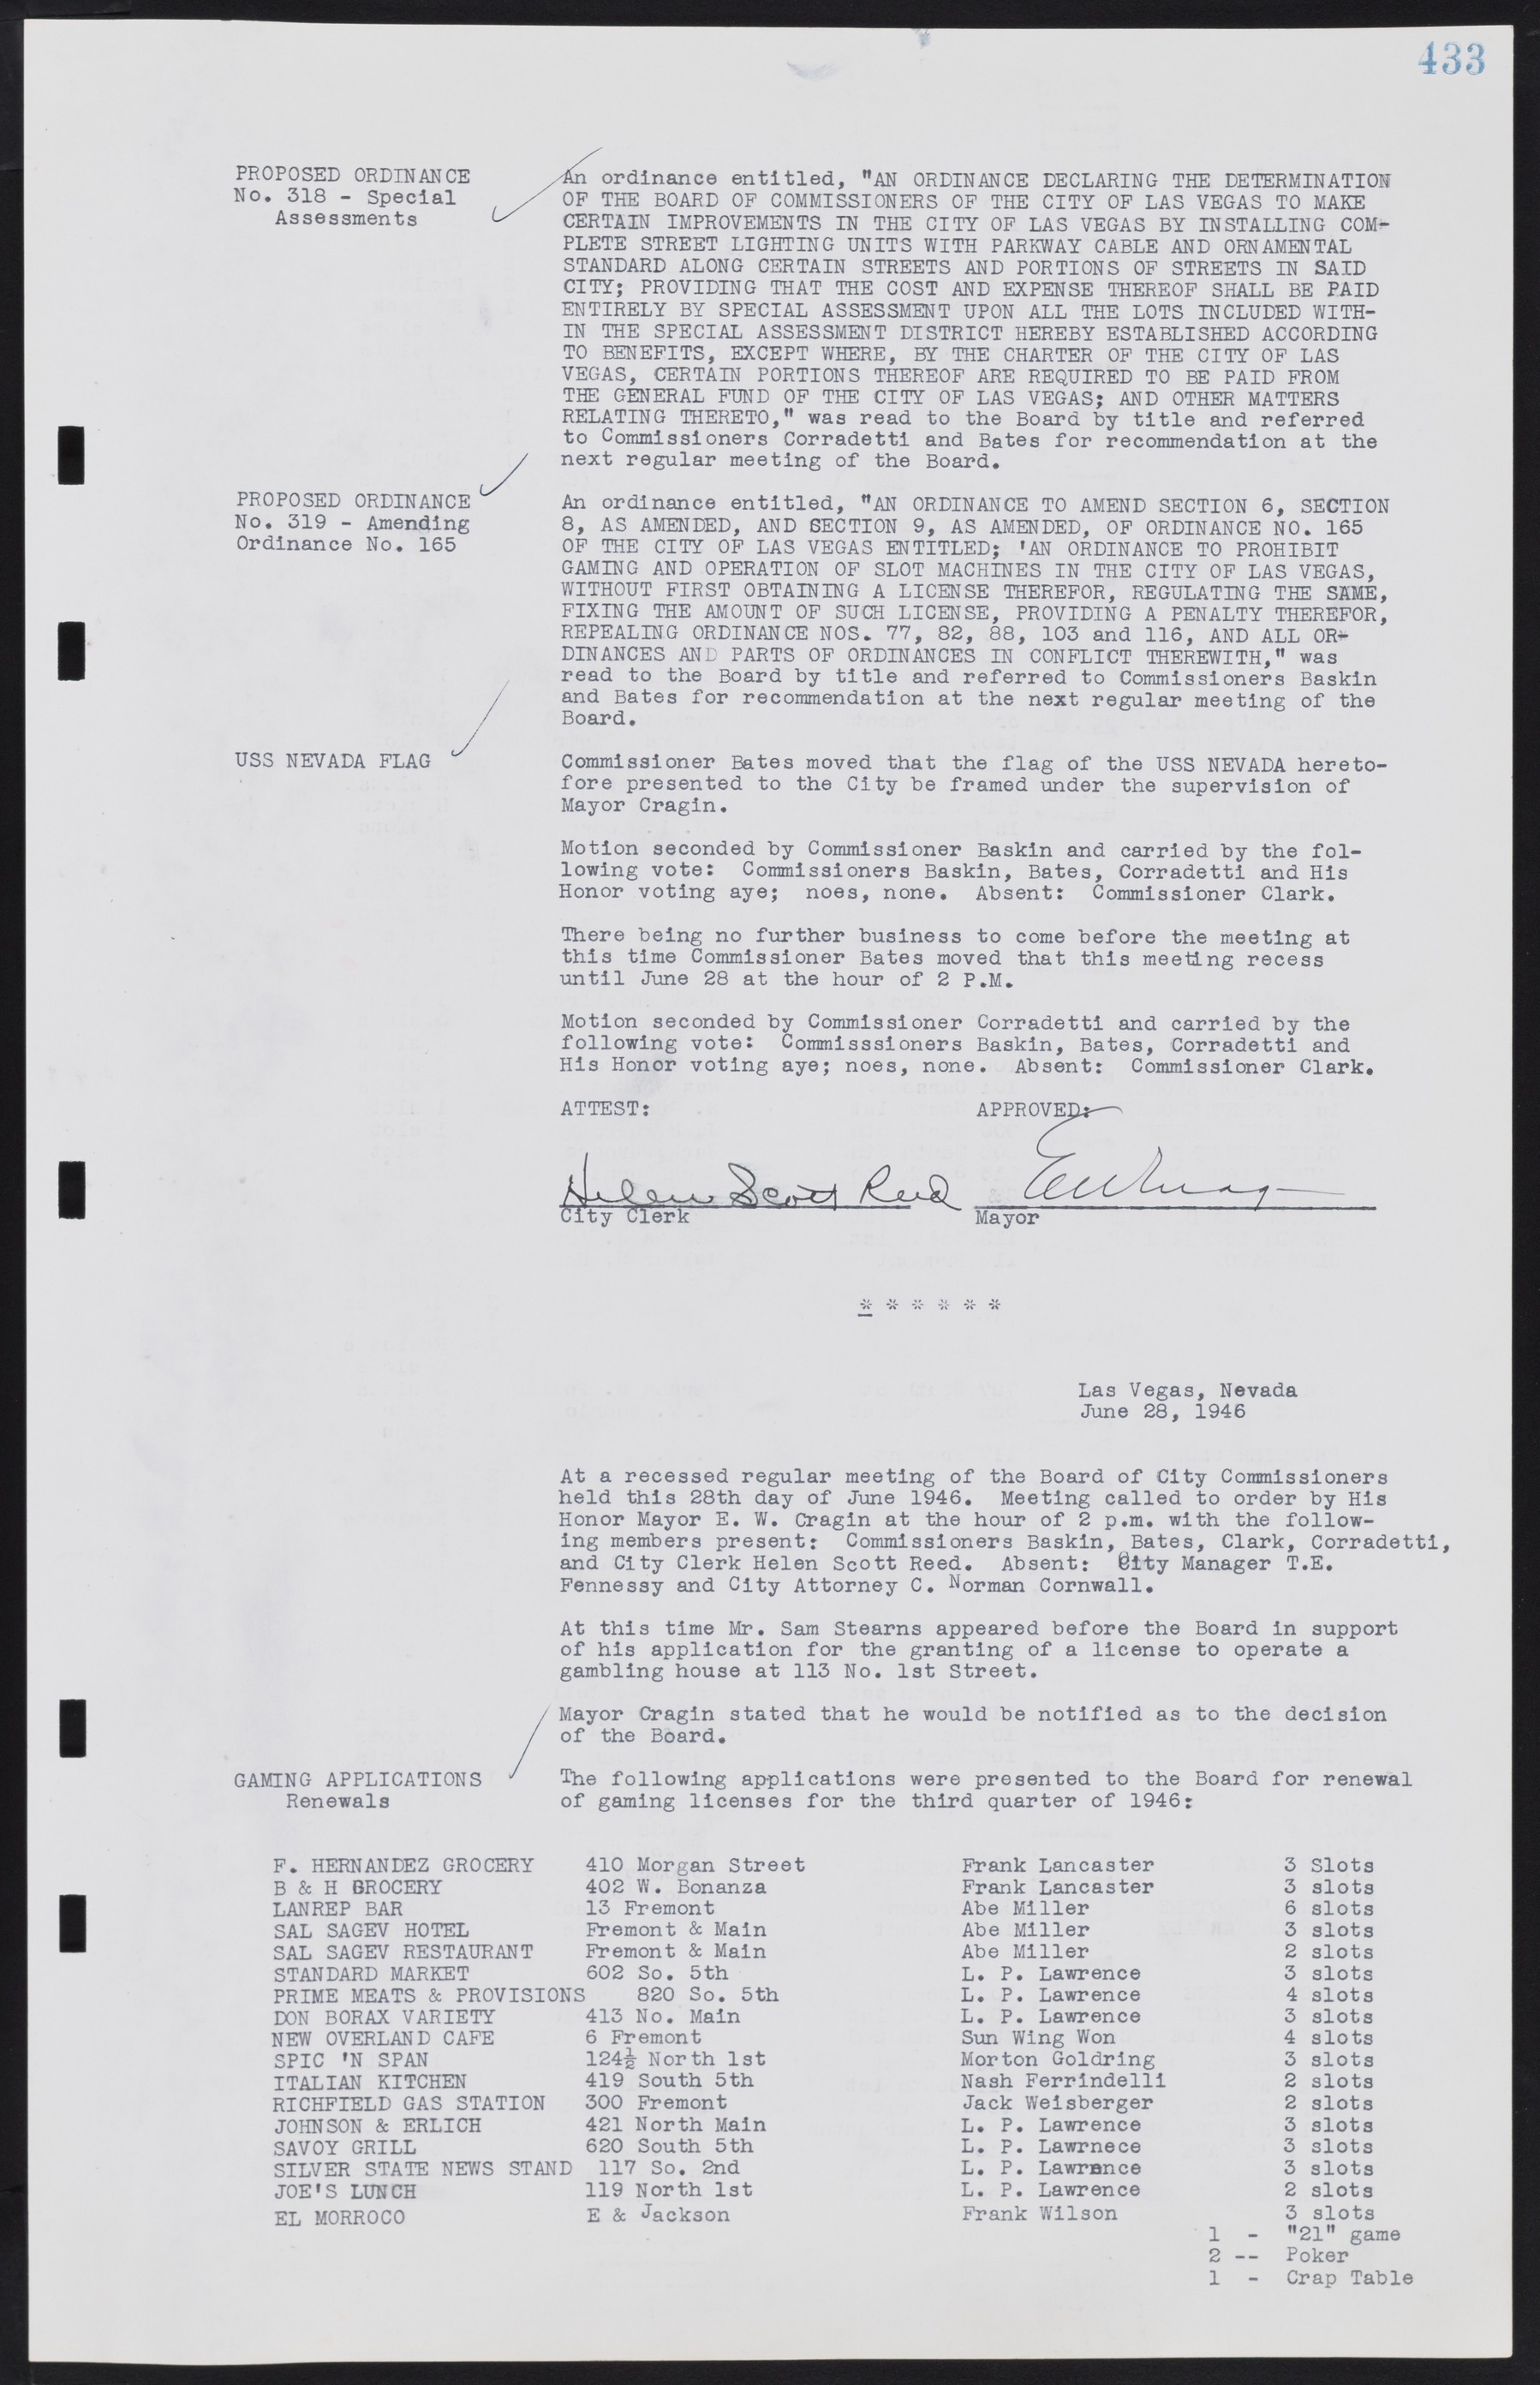 Las Vegas City Commission Minutes, August 11, 1942 to December 30, 1946, lvc000005-461